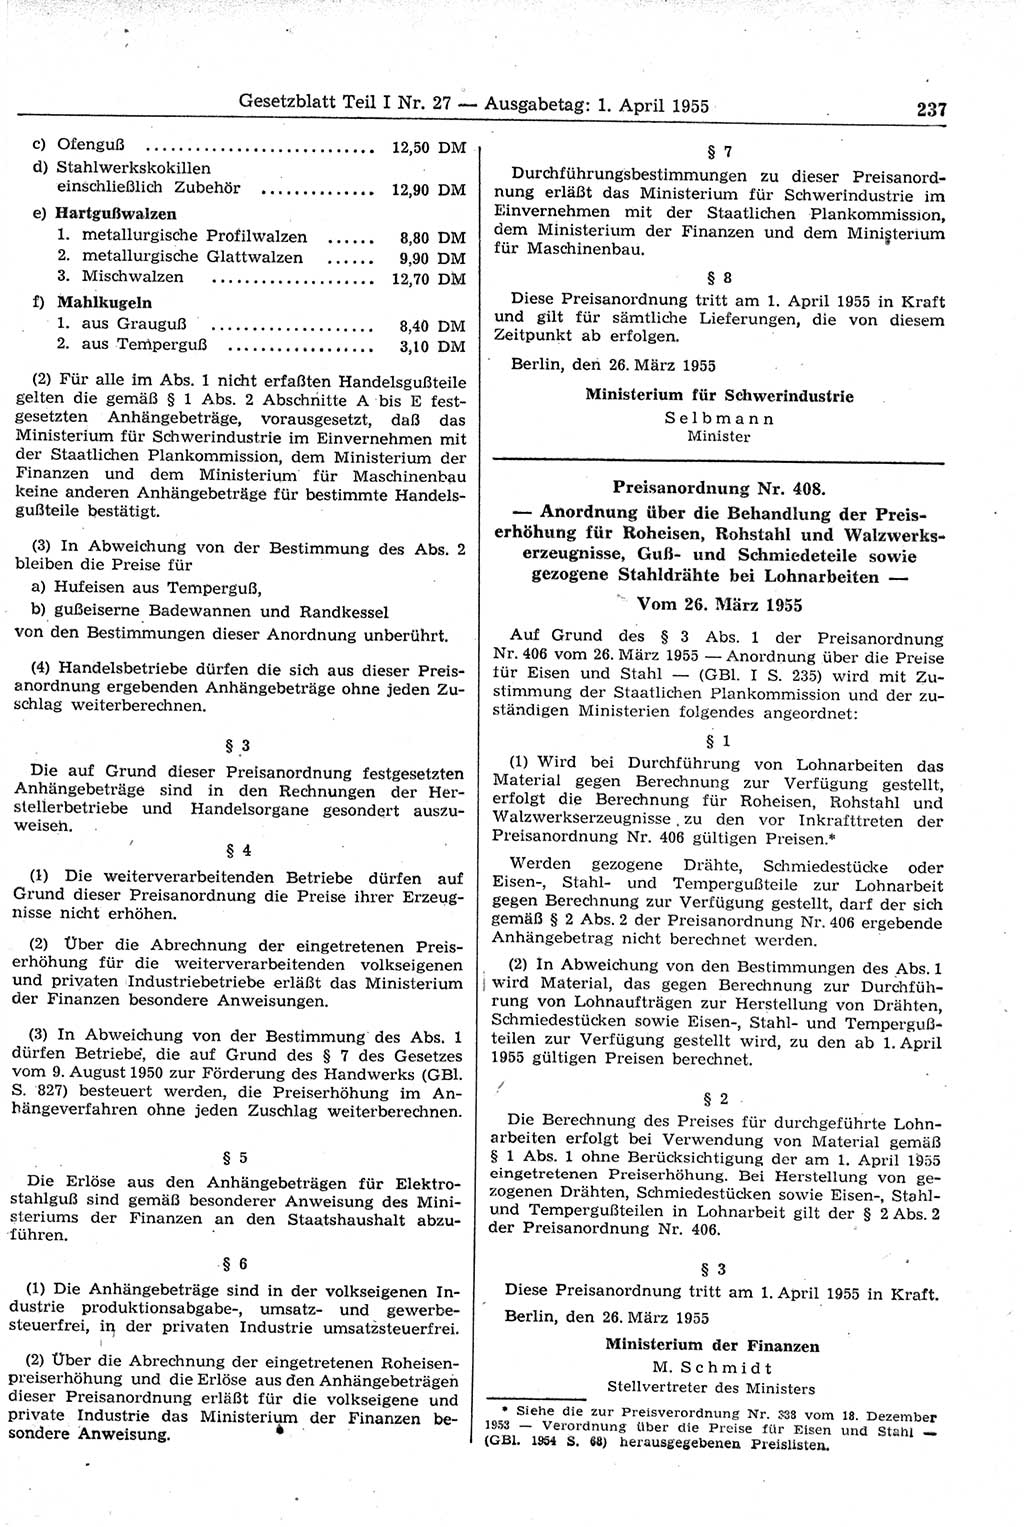 Gesetzblatt (GBl.) der Deutschen Demokratischen Republik (DDR) Teil Ⅰ 1955, Seite 237 (GBl. DDR Ⅰ 1955, S. 237)